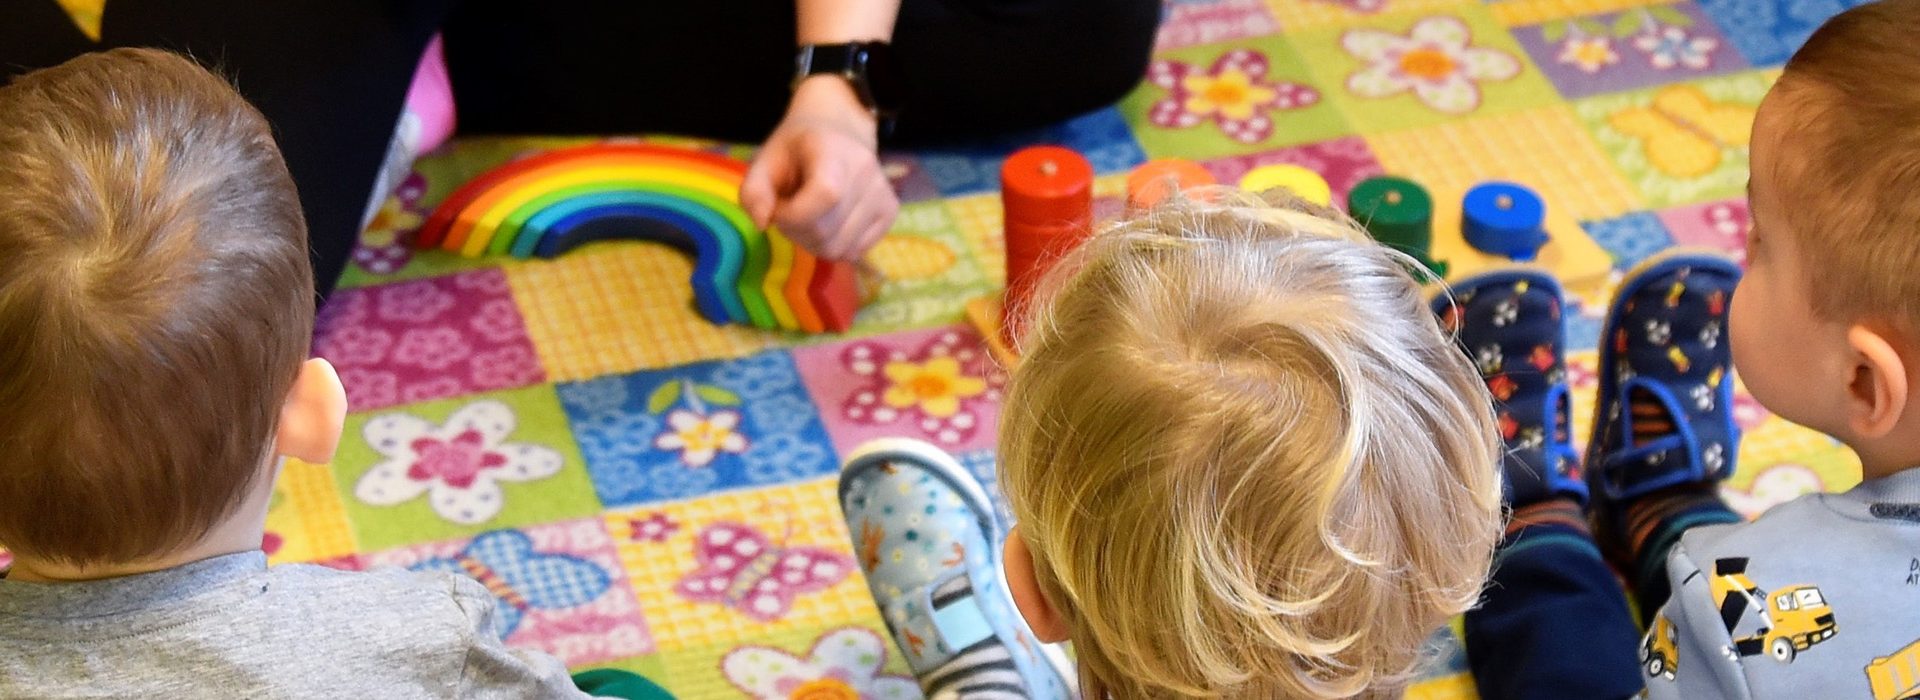 Detičky v detskom svete hier, pomocou Montessori výučby